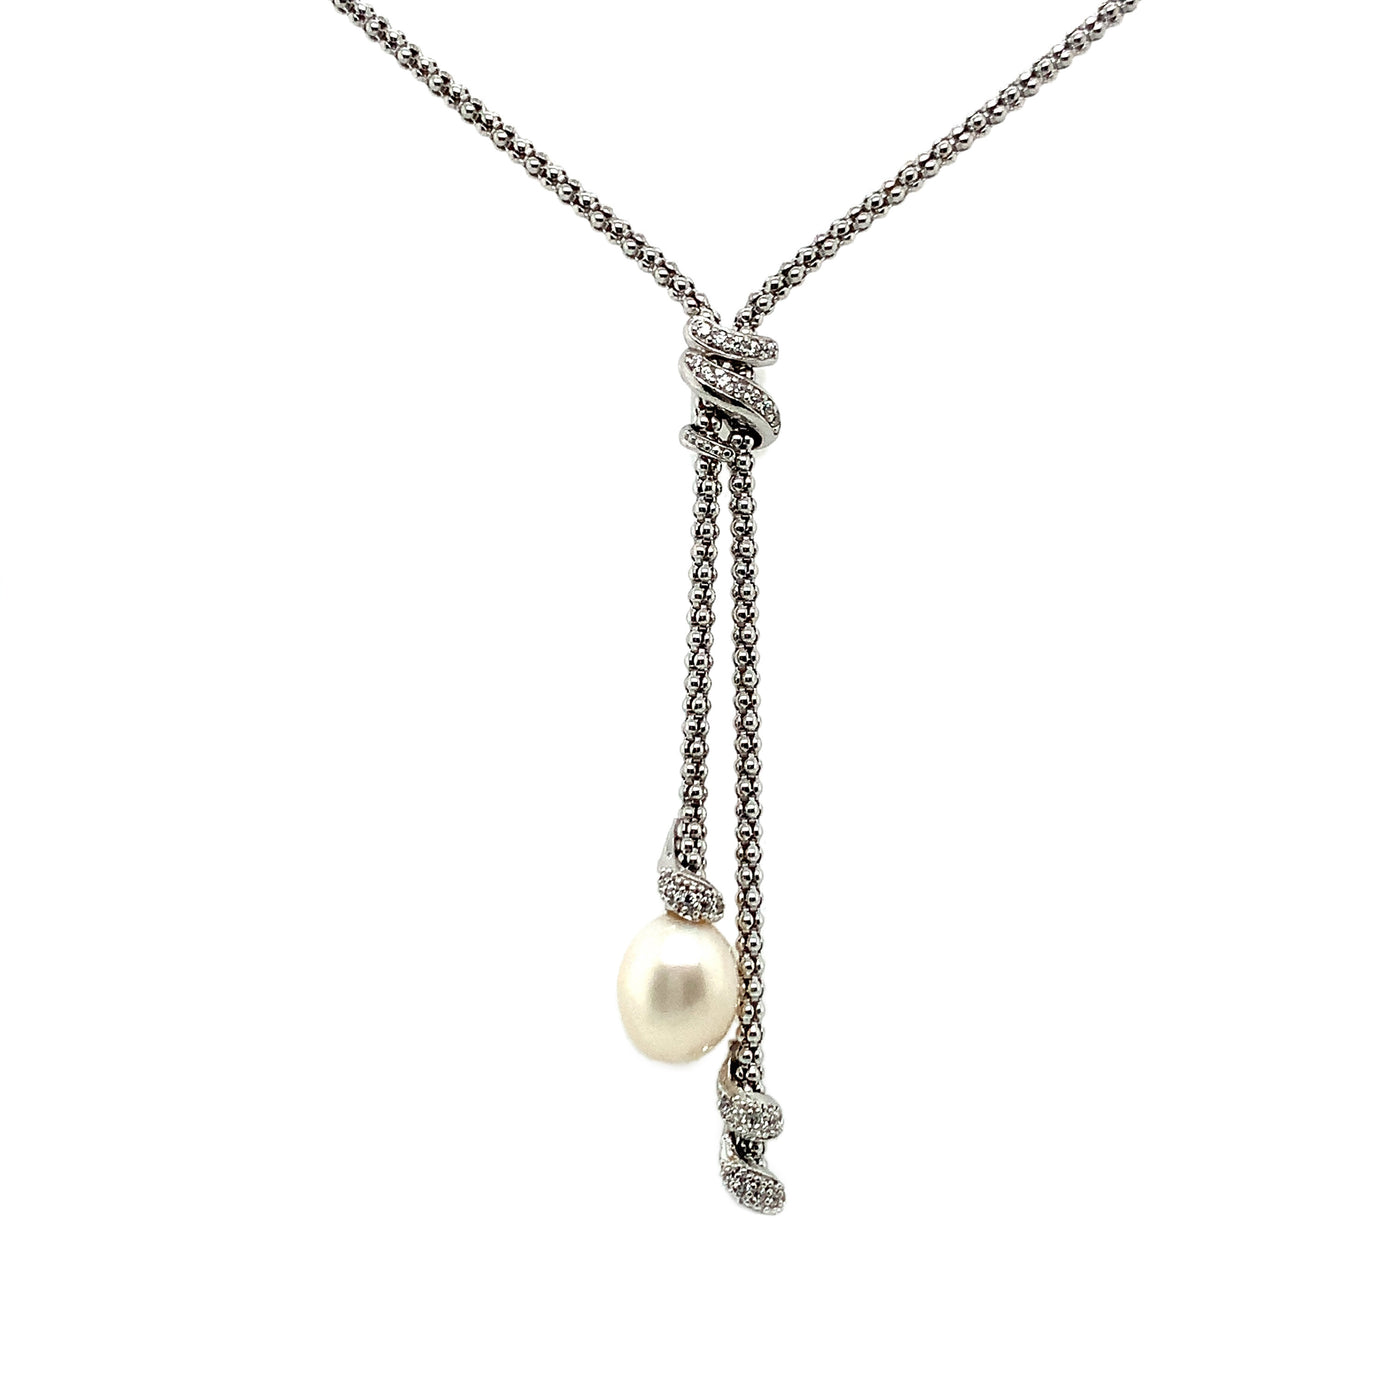 IL Diletto - 925 Italian Silver Necklace, Popcorn chain, Pearl & CZ, 40+5cm, Rhodium Plated